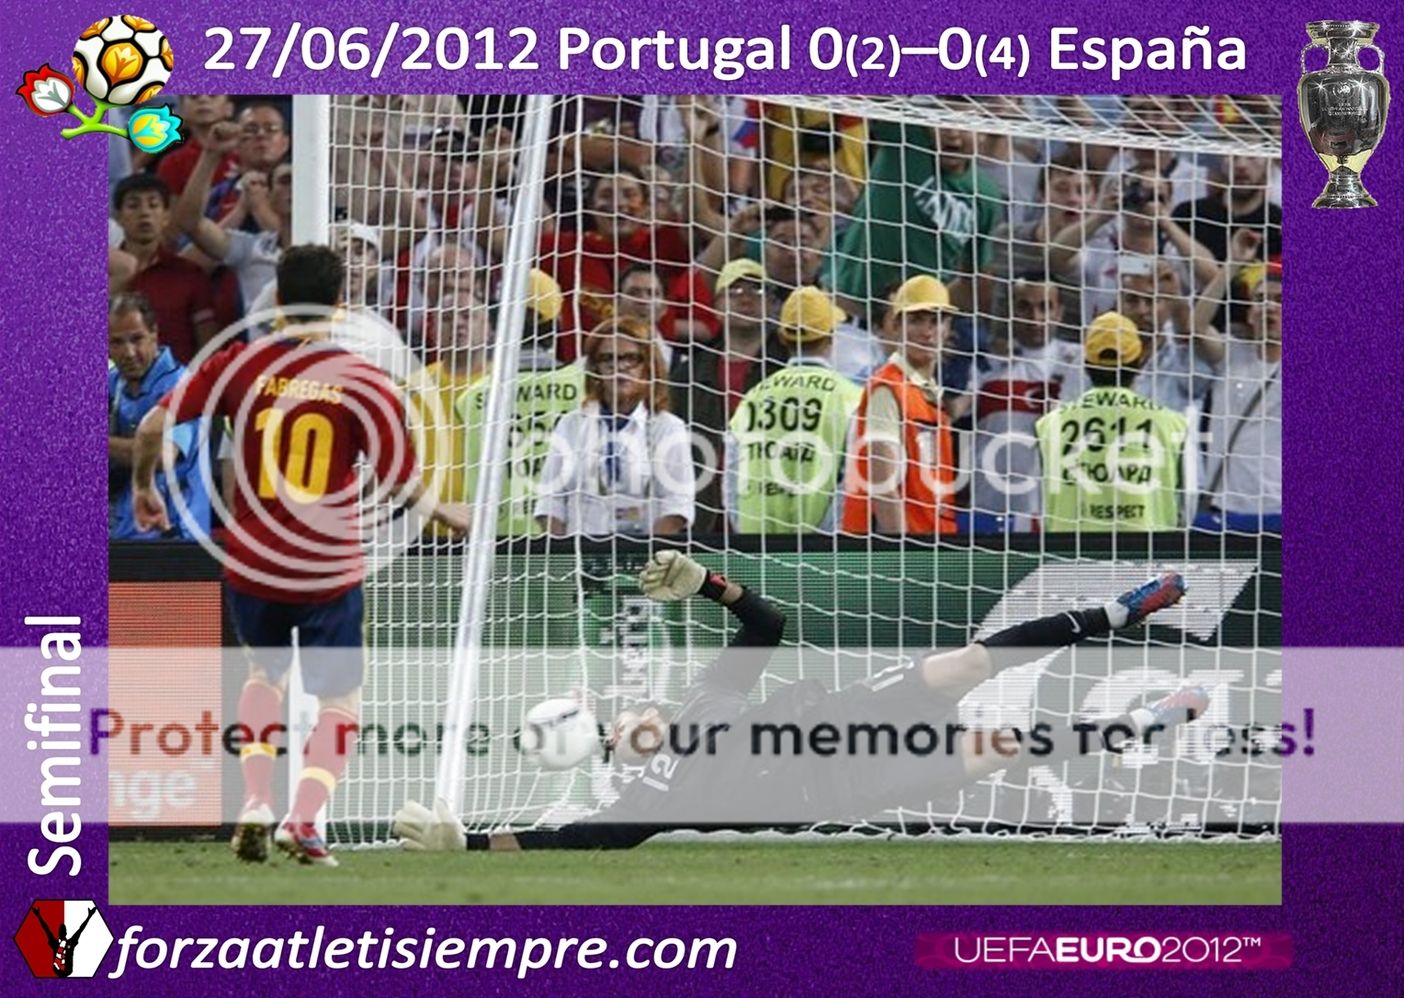 PORTUGAL 0 (2) - ESPAÑA 0 (4) - España no baja del paraíso 196Copiar